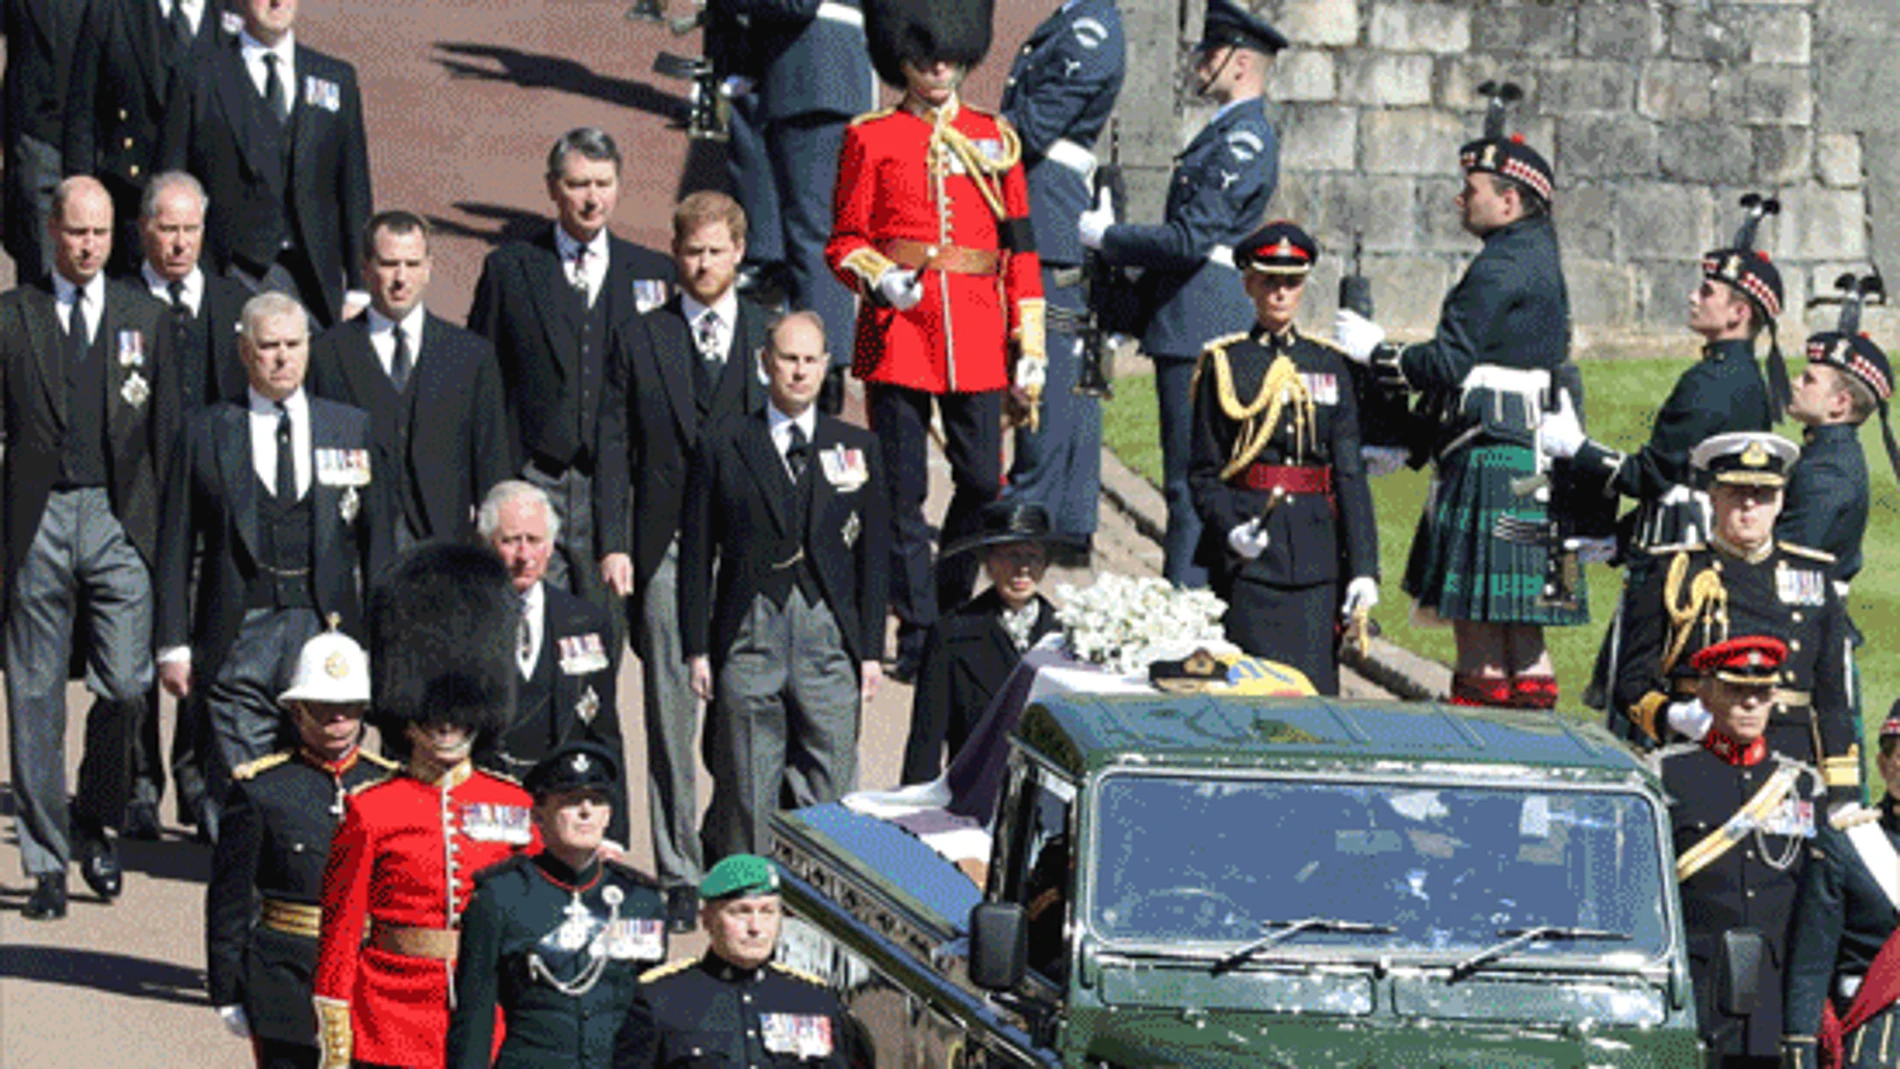 Como consorte real tenía derecho a un funeral de Estado, pero el príncipe Felipe siempre quiso una ceremonia familiar pero solemne.